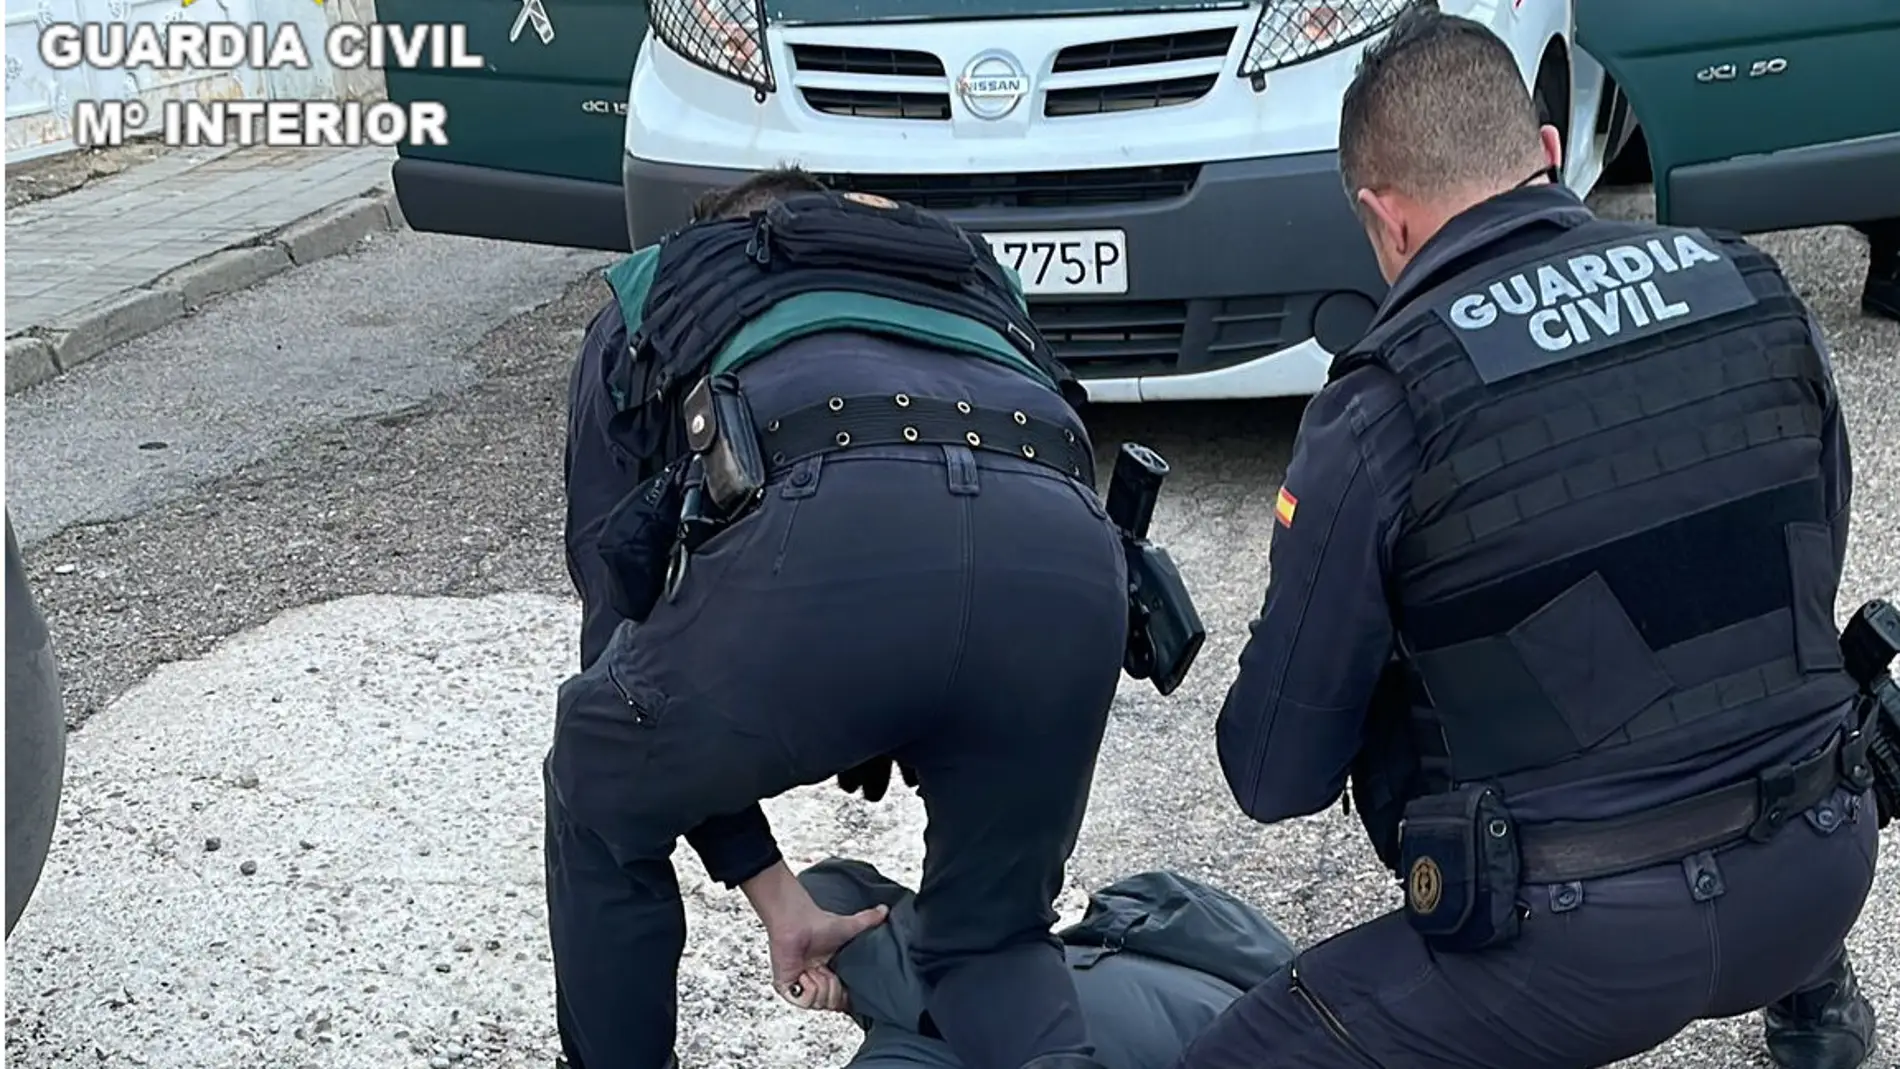 La Guardia Civil detiene a varias personas por distintos delitos durante un dispositivo operativo en la comarca de La Sagra